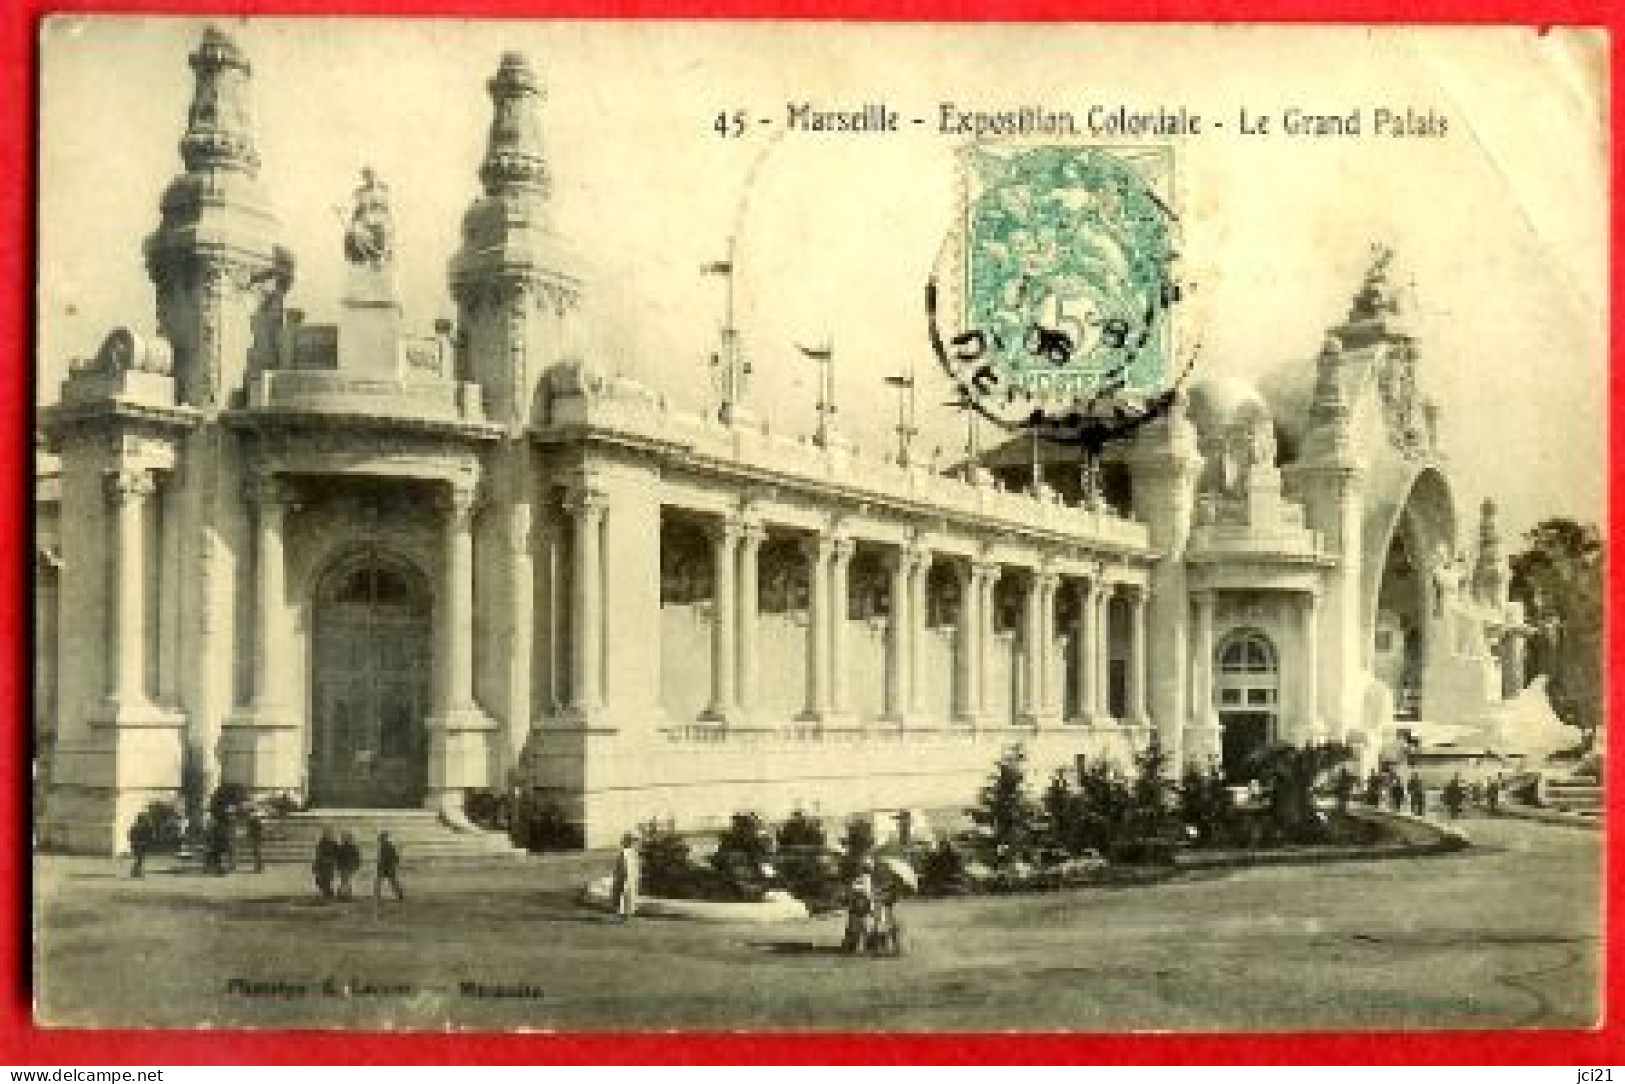 13 - MARSEILLE - EXPOSITION COLONIALE - LE GRAND PALAIS - CPA ANIMÉE (337)_CP70 - Mostre Coloniali 1906 – 1922